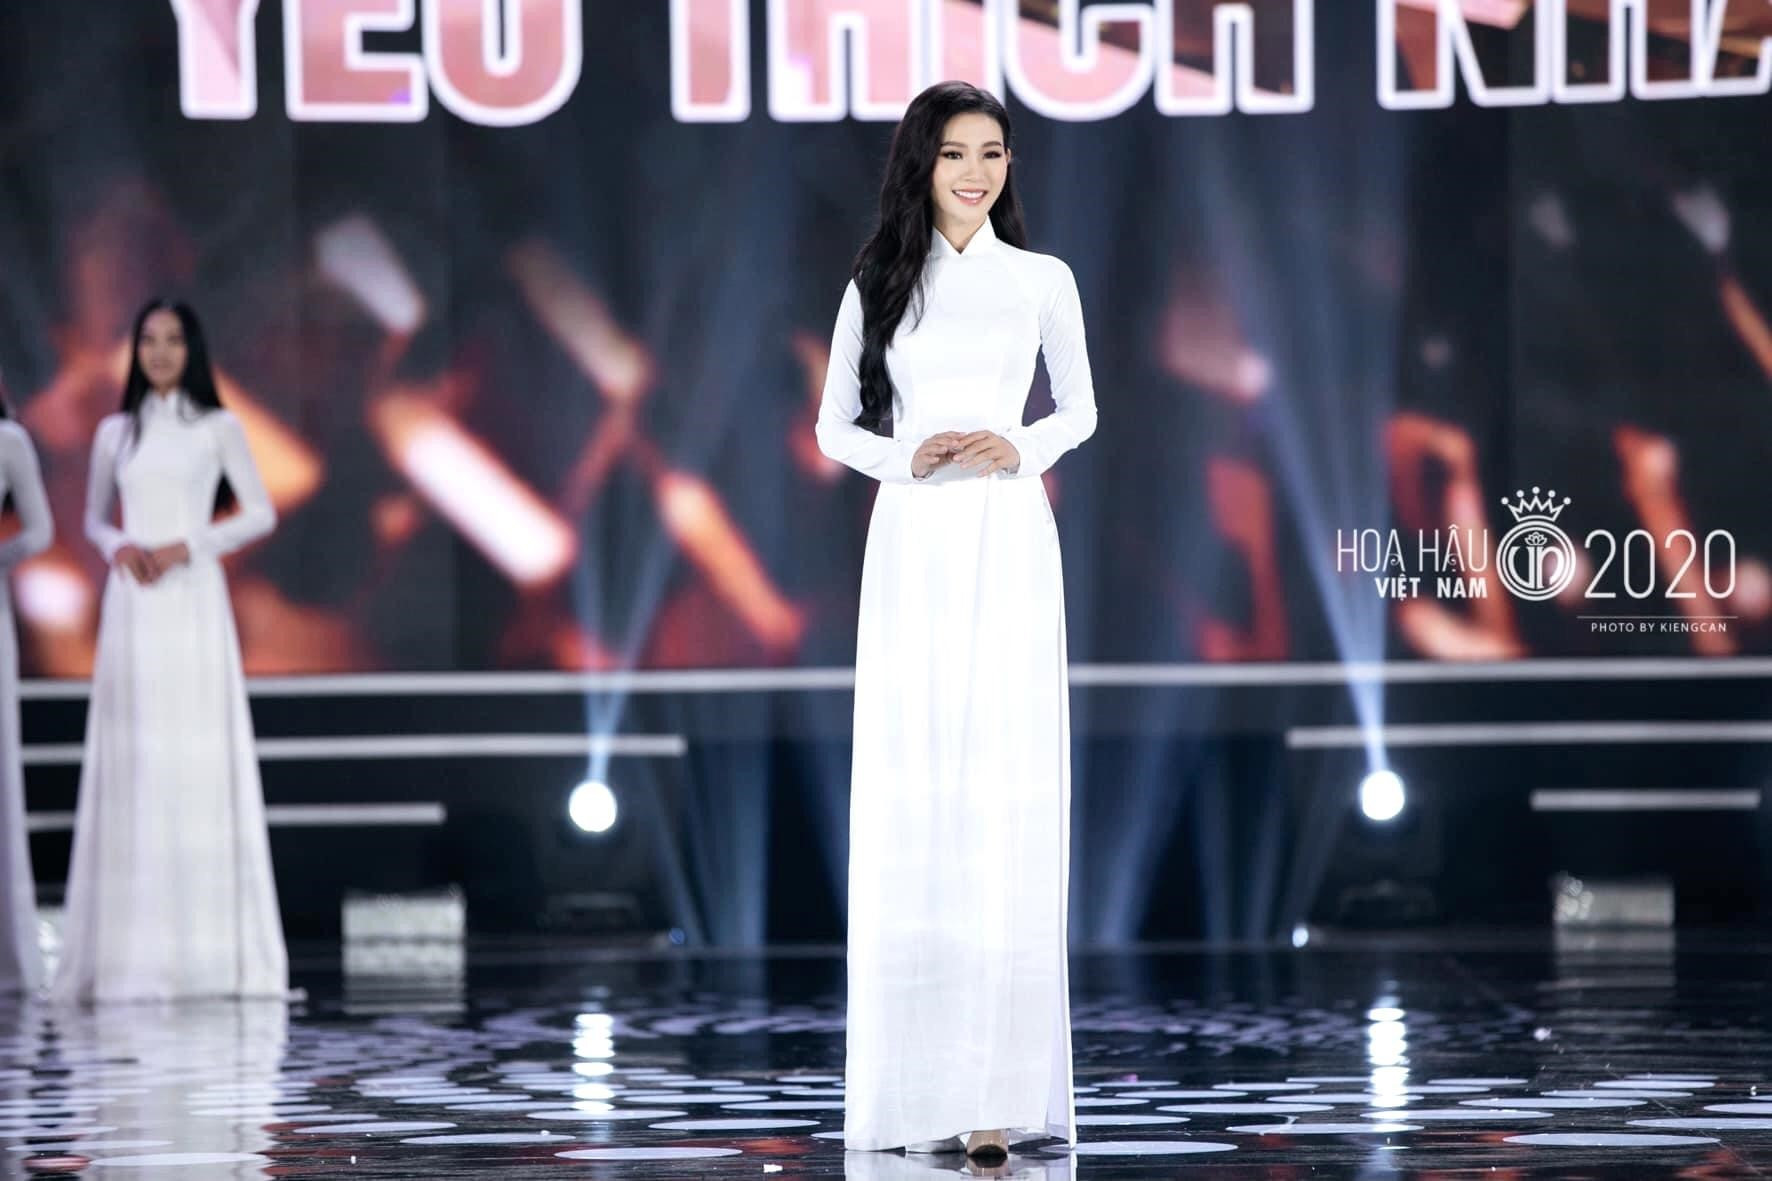 Đậu Hải Minh Anh: 'Giải thưởng Người đẹp được yêu thích nhất là dấu mốc đời tôi' - 5